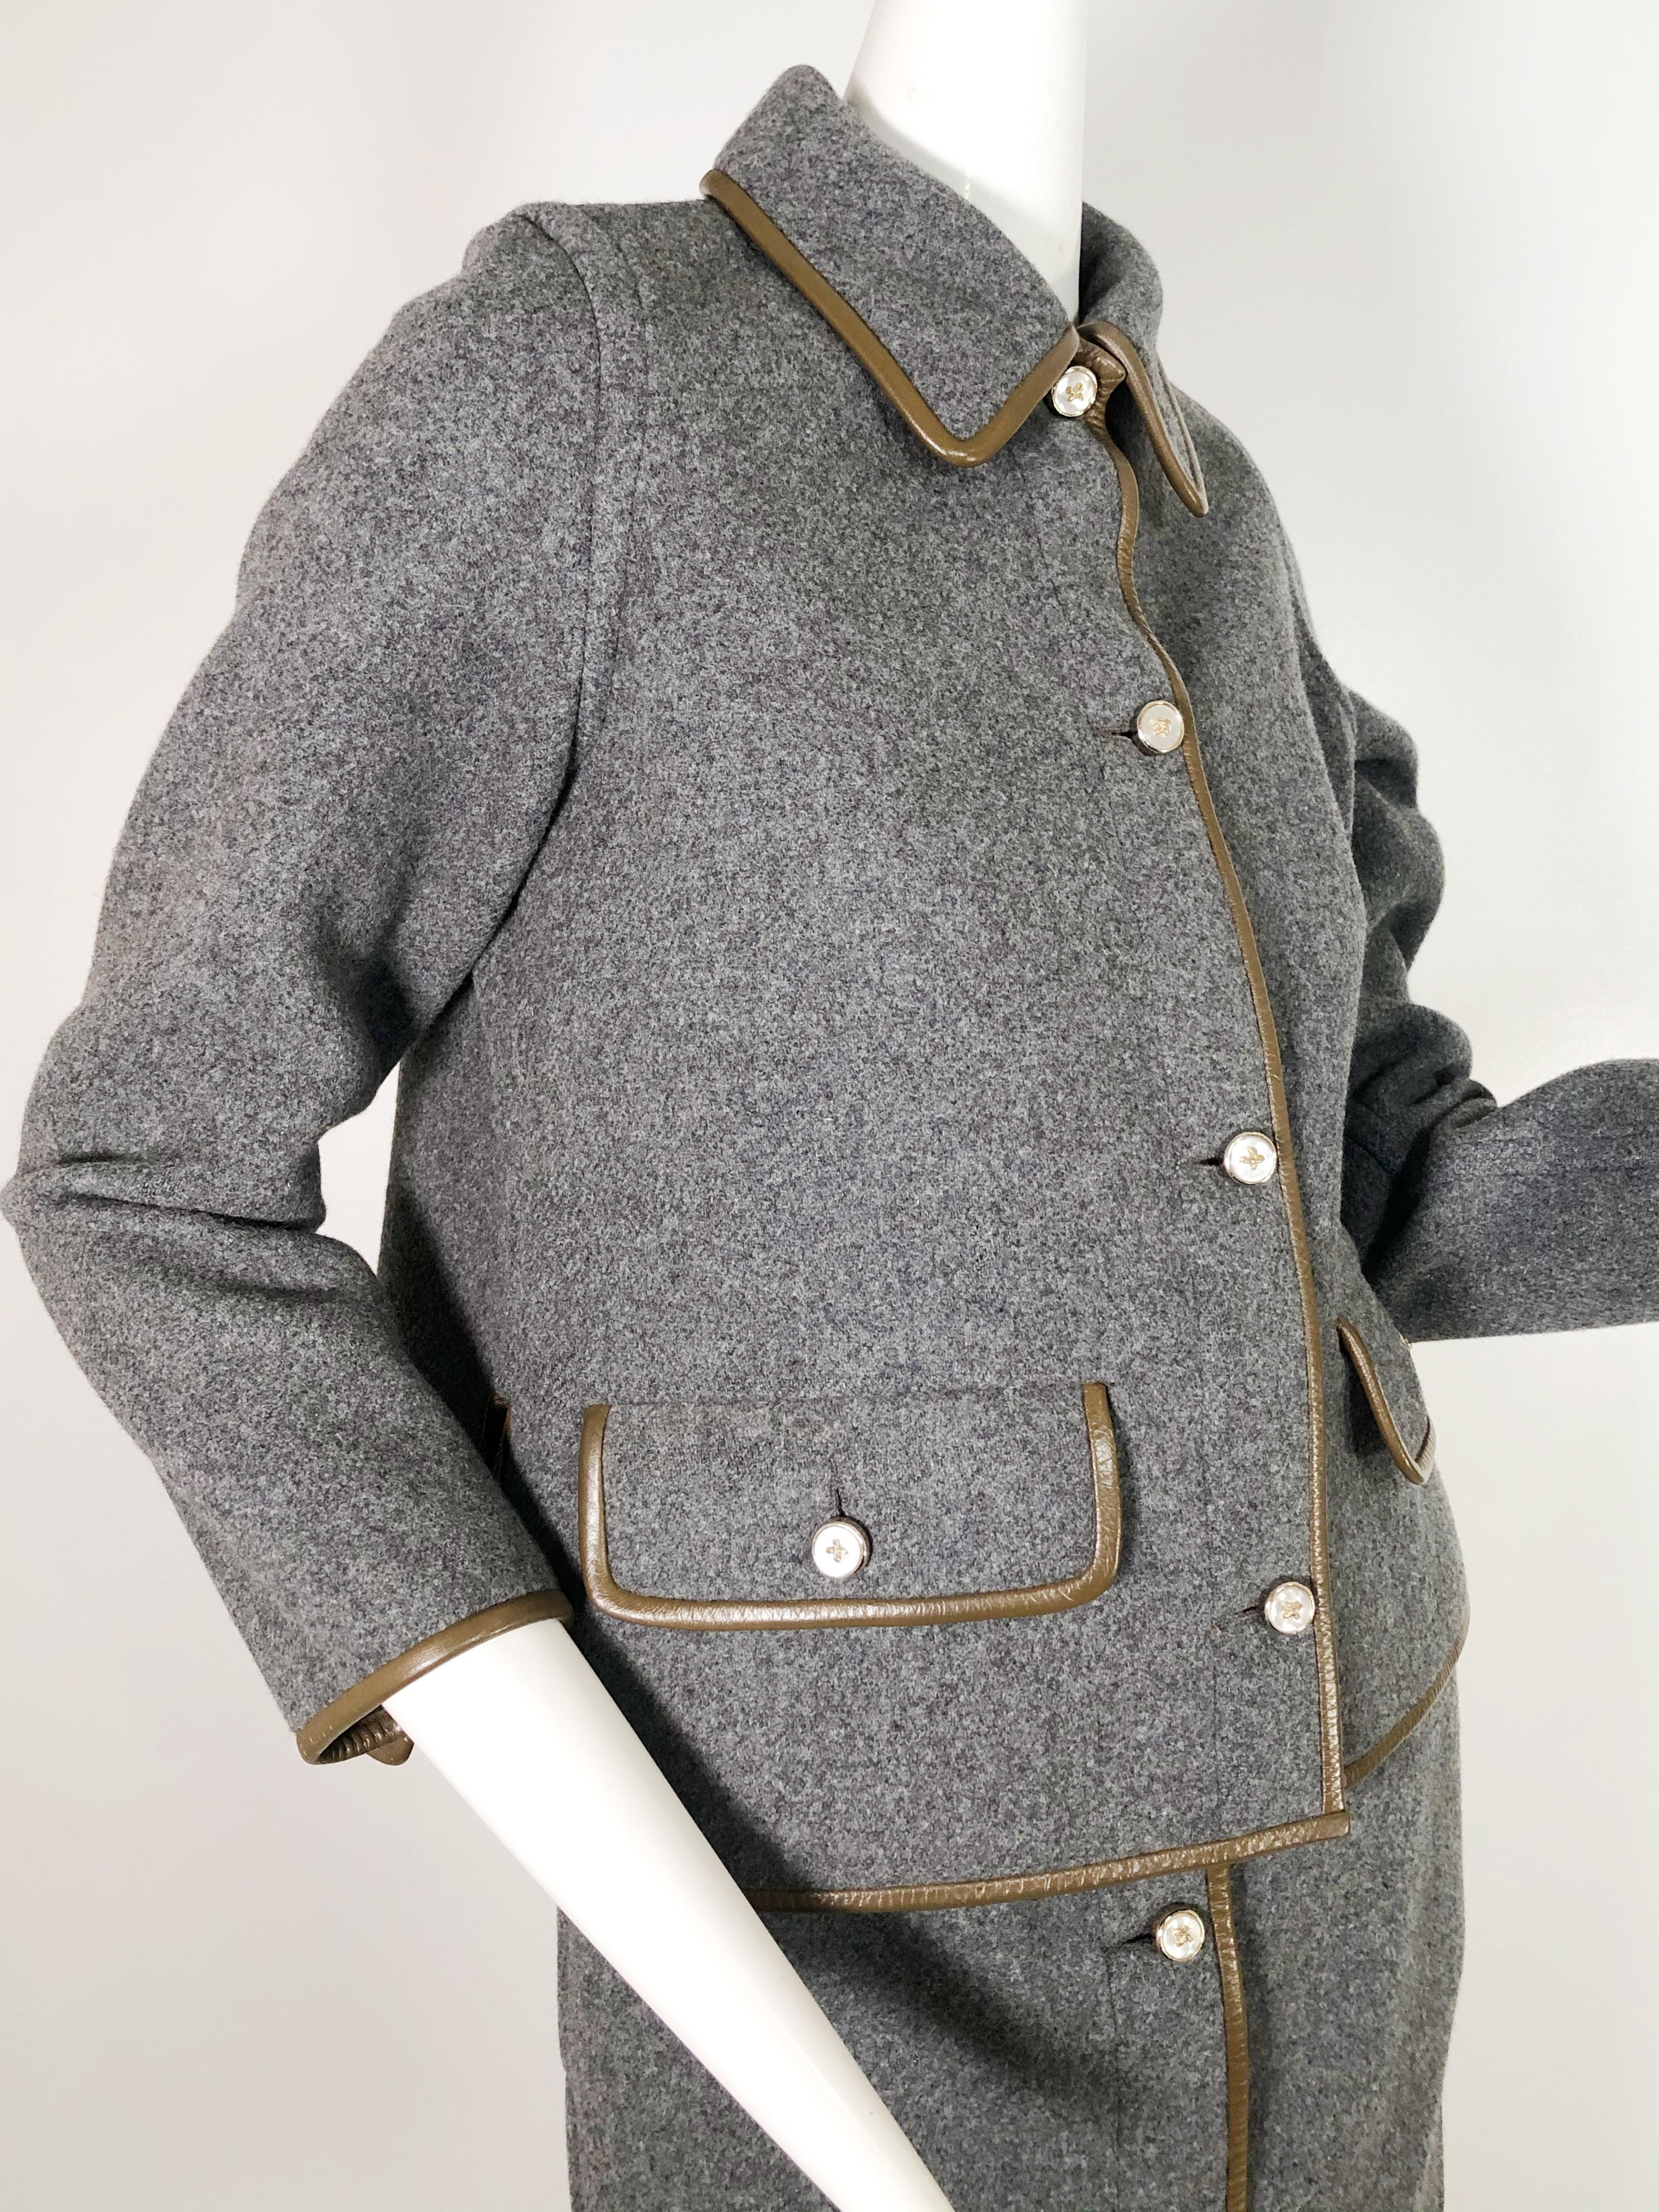 Tailleur jupe en laine grise avec bordure en cuir marron Sills by Bonnie Cashin, années 1960 en vente 3